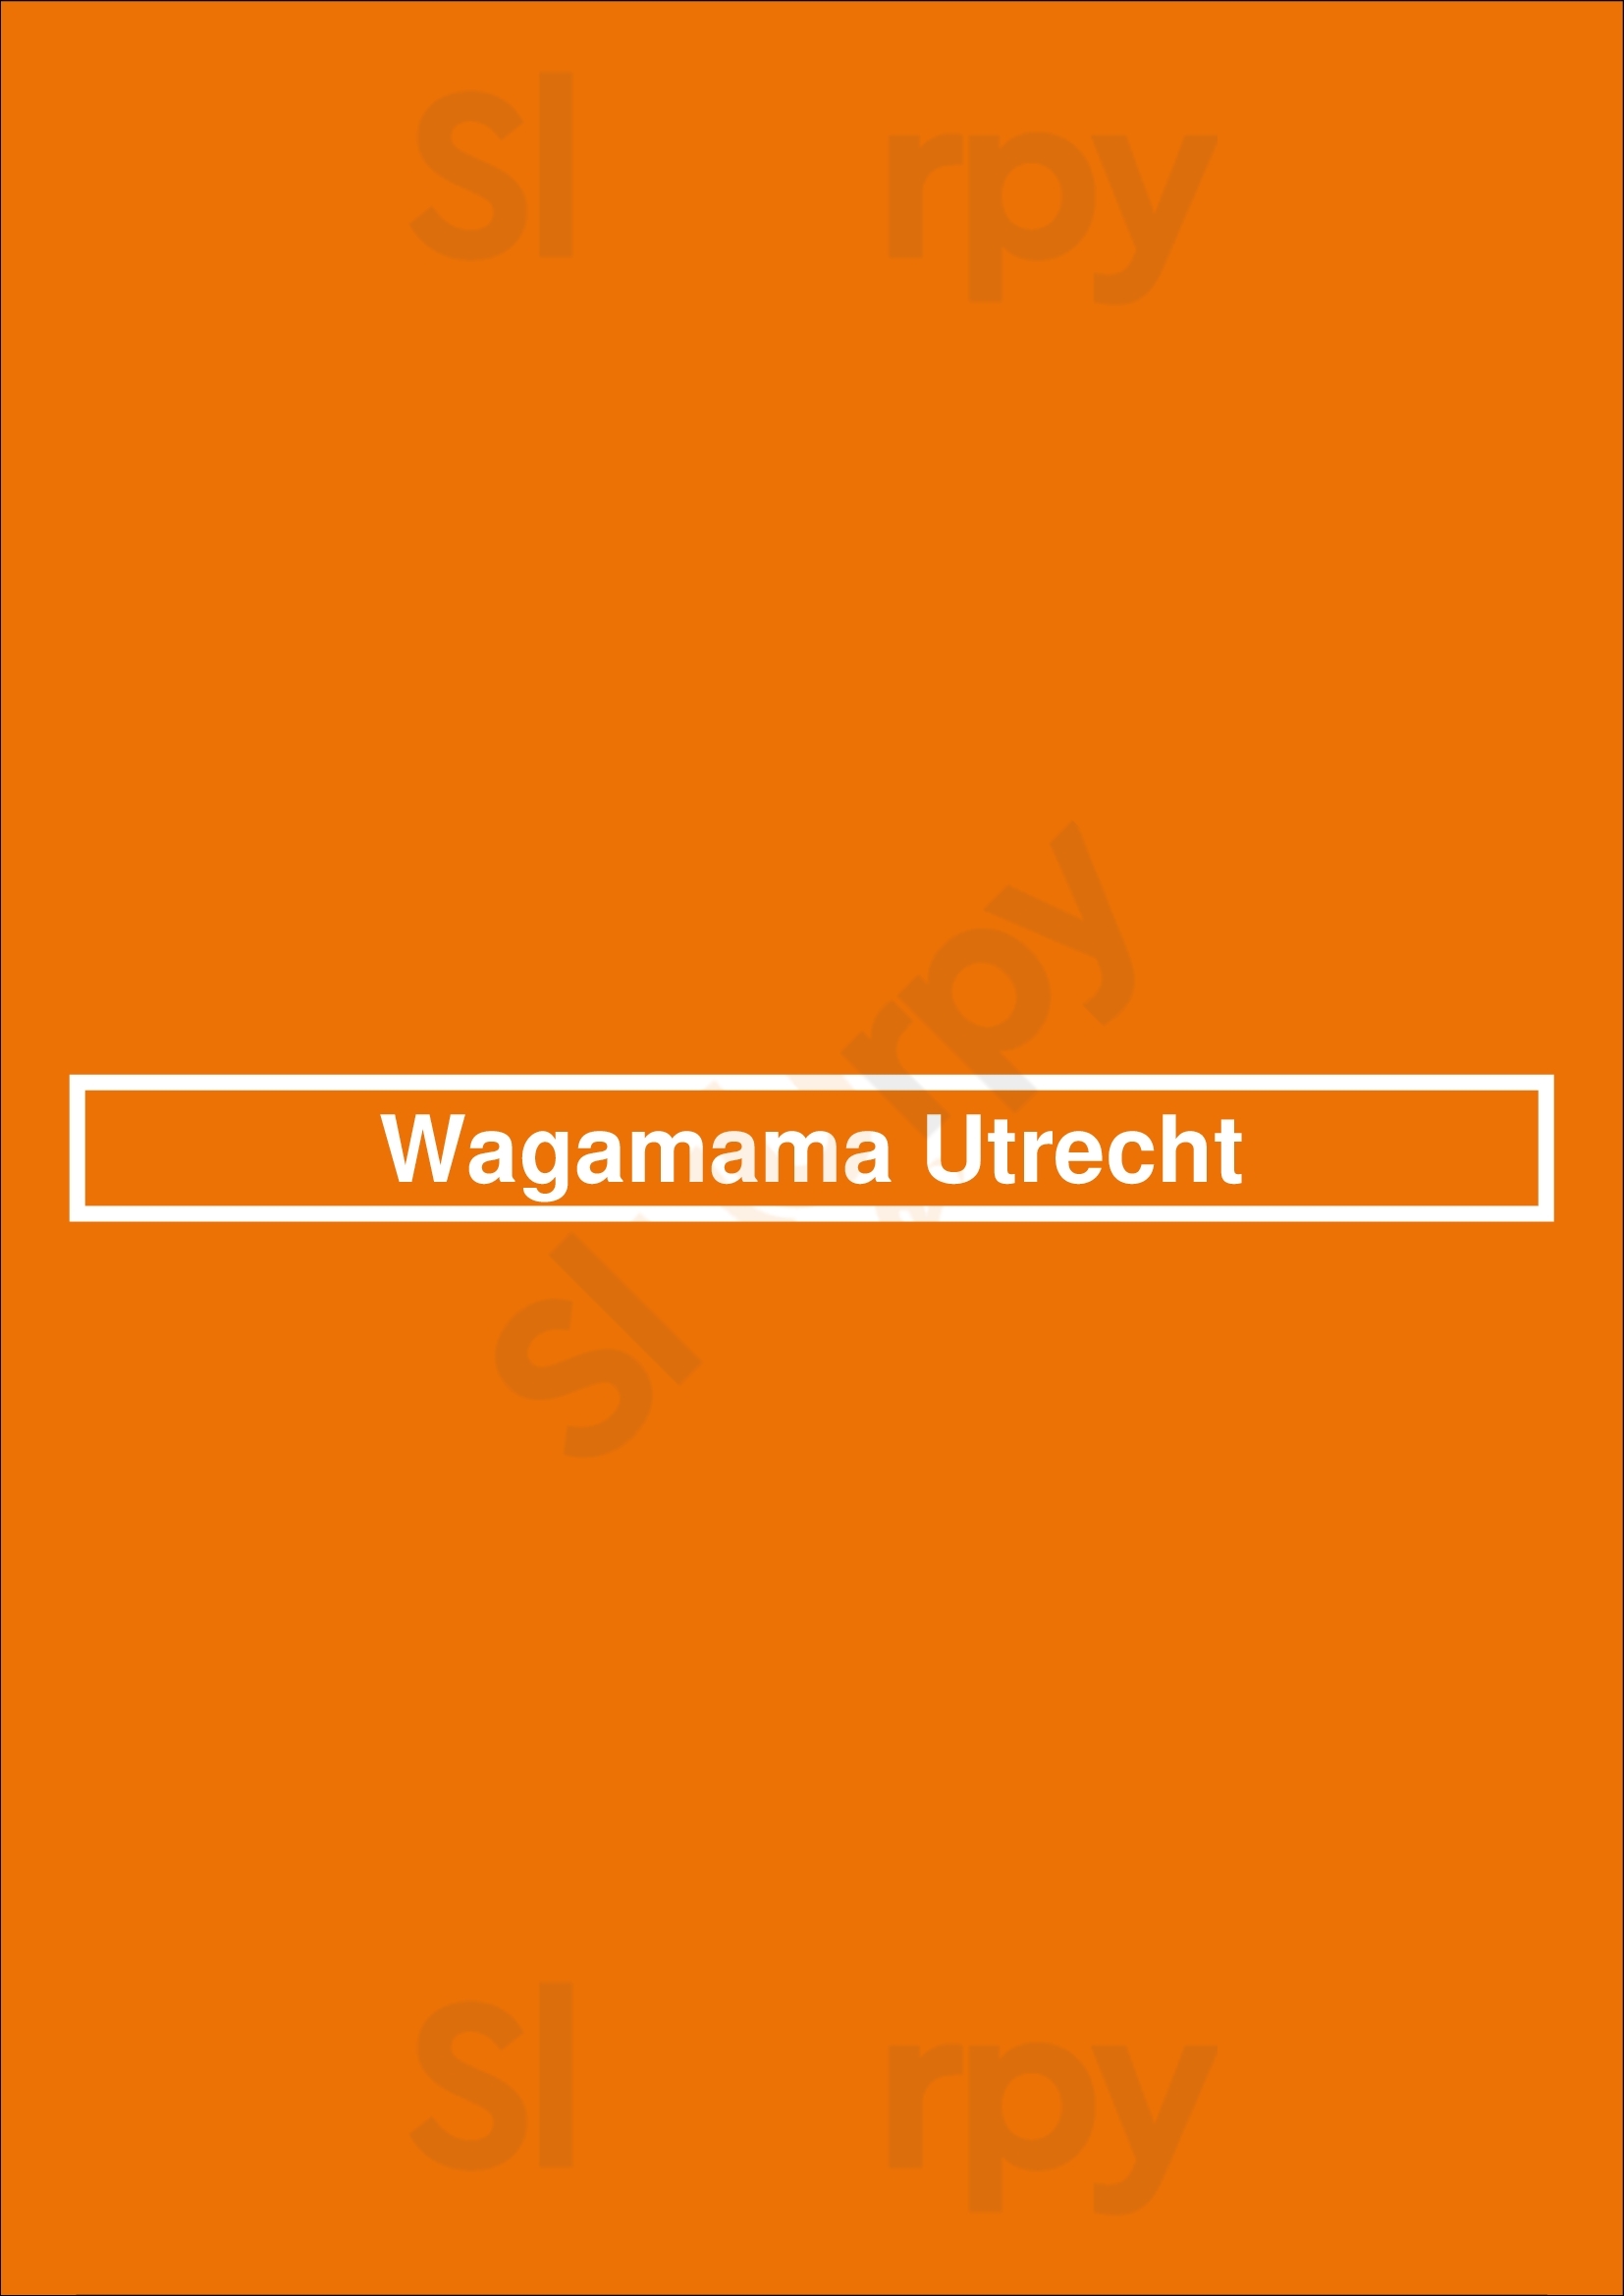 Wagamama Utrecht Utrecht Menu - 1